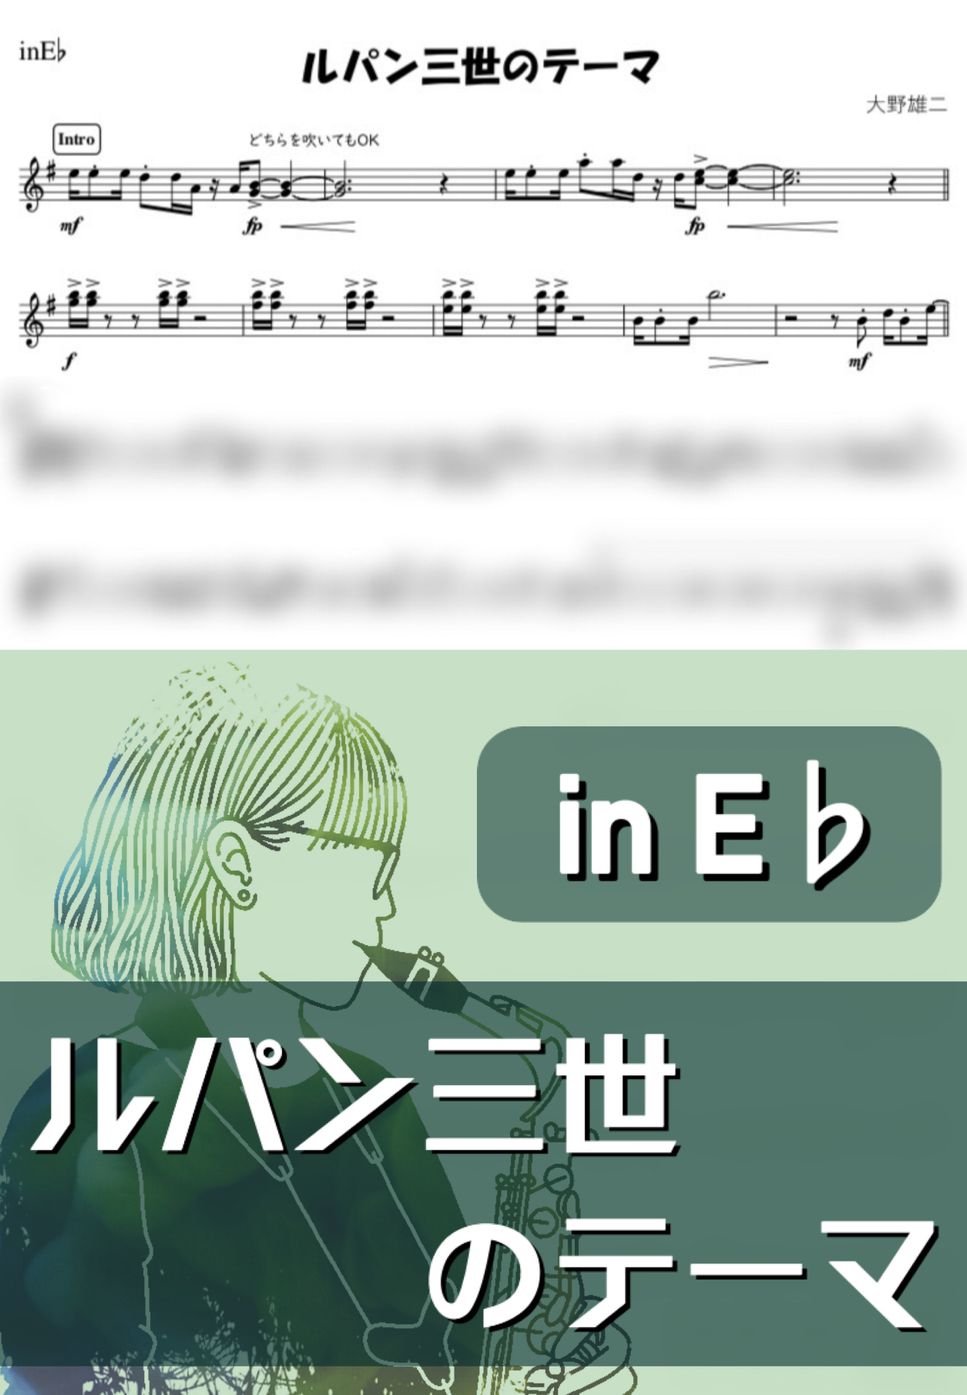 大野雄二 - ルパン三世のテーマ (E♭) by kanamusic